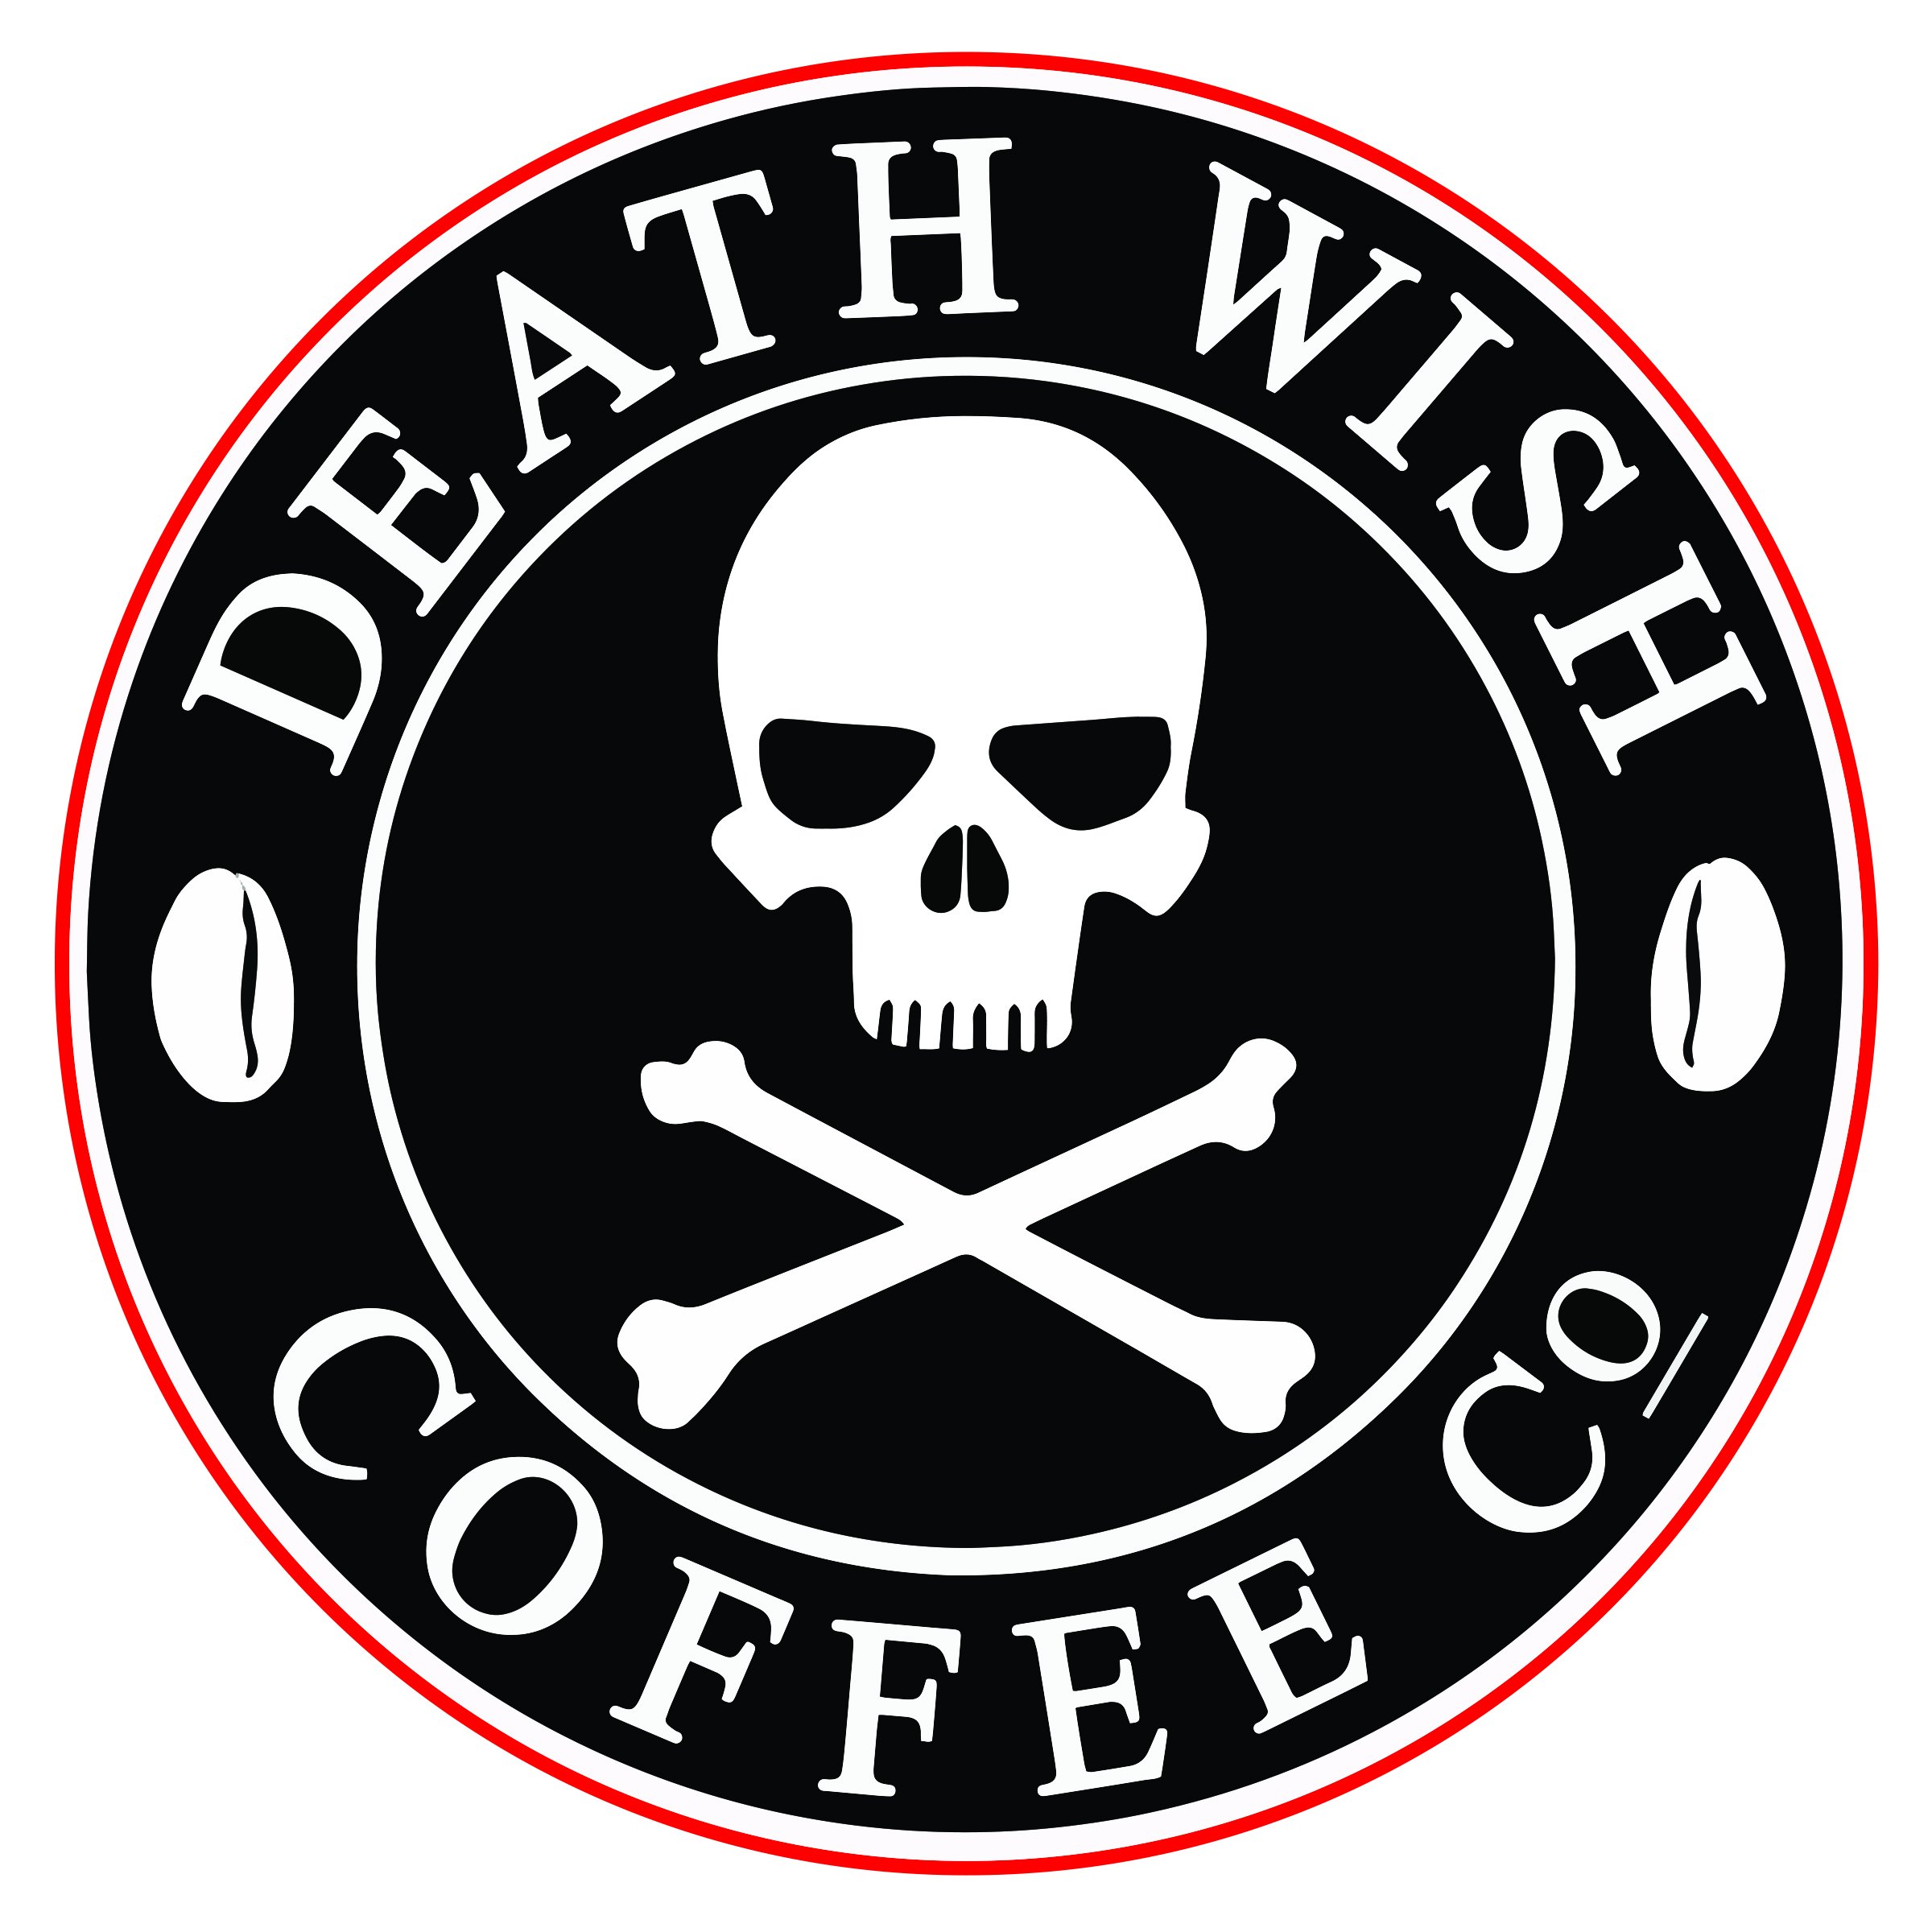 Death Wish Coffee Company